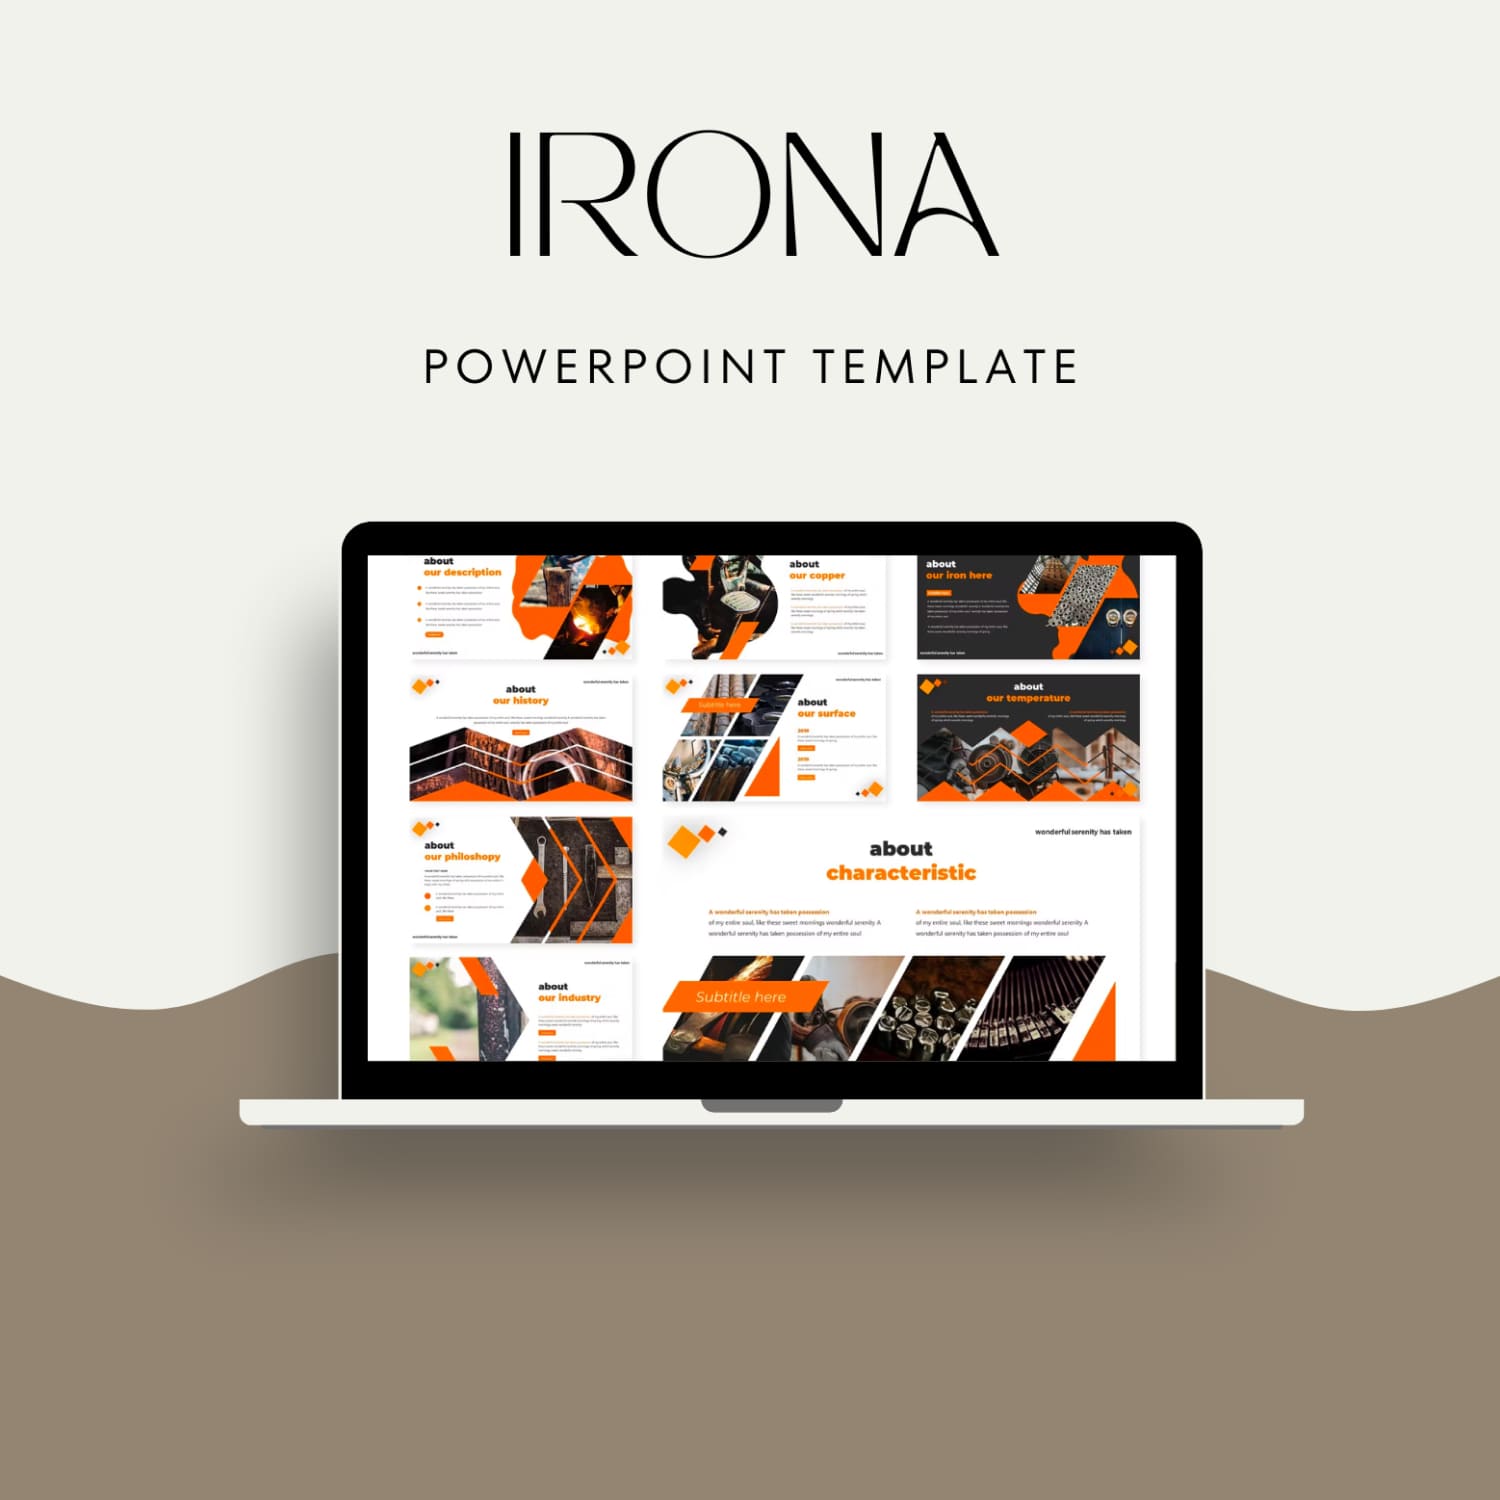 Screenshot Irona powerpoint template on Ultrabook.